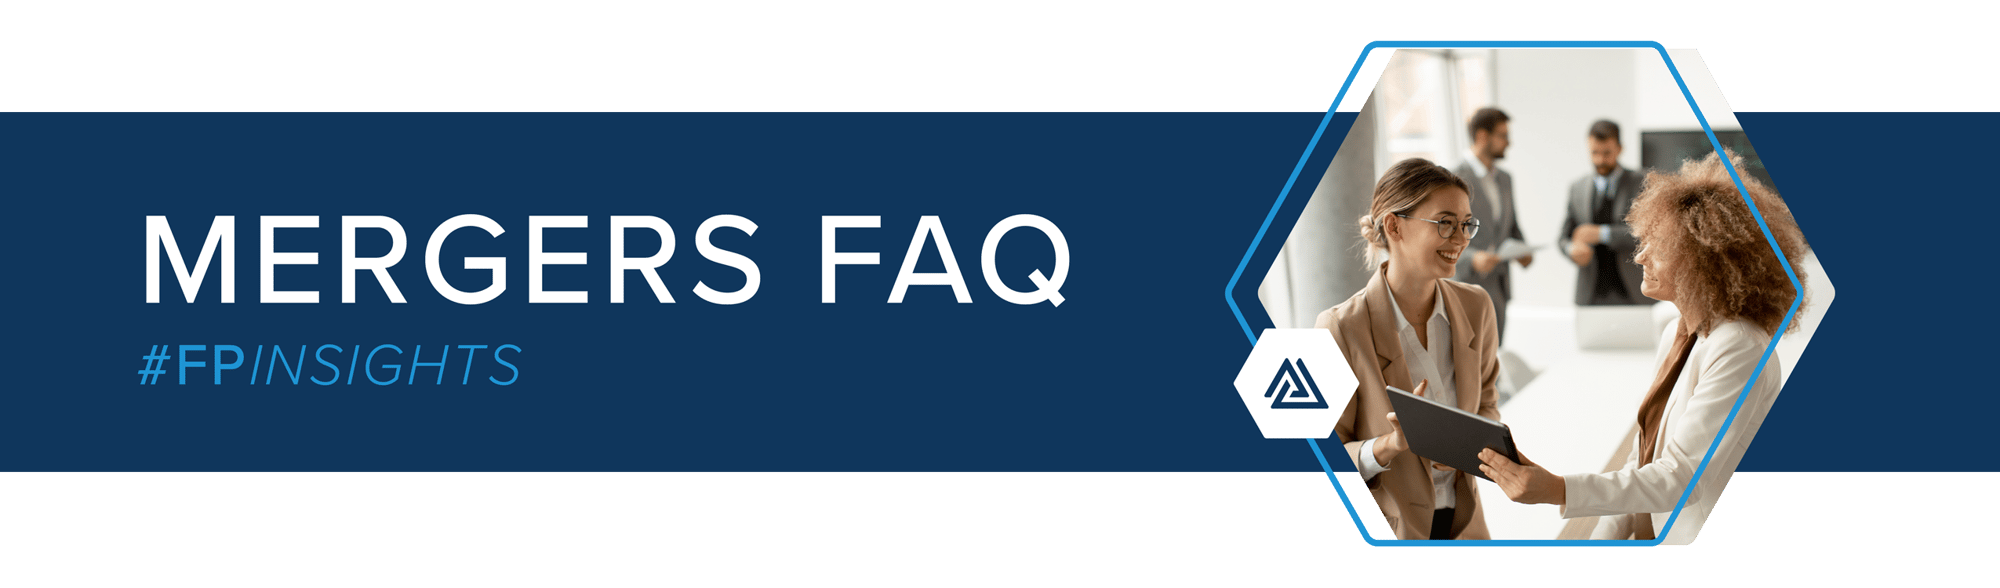 Mergers FAQ